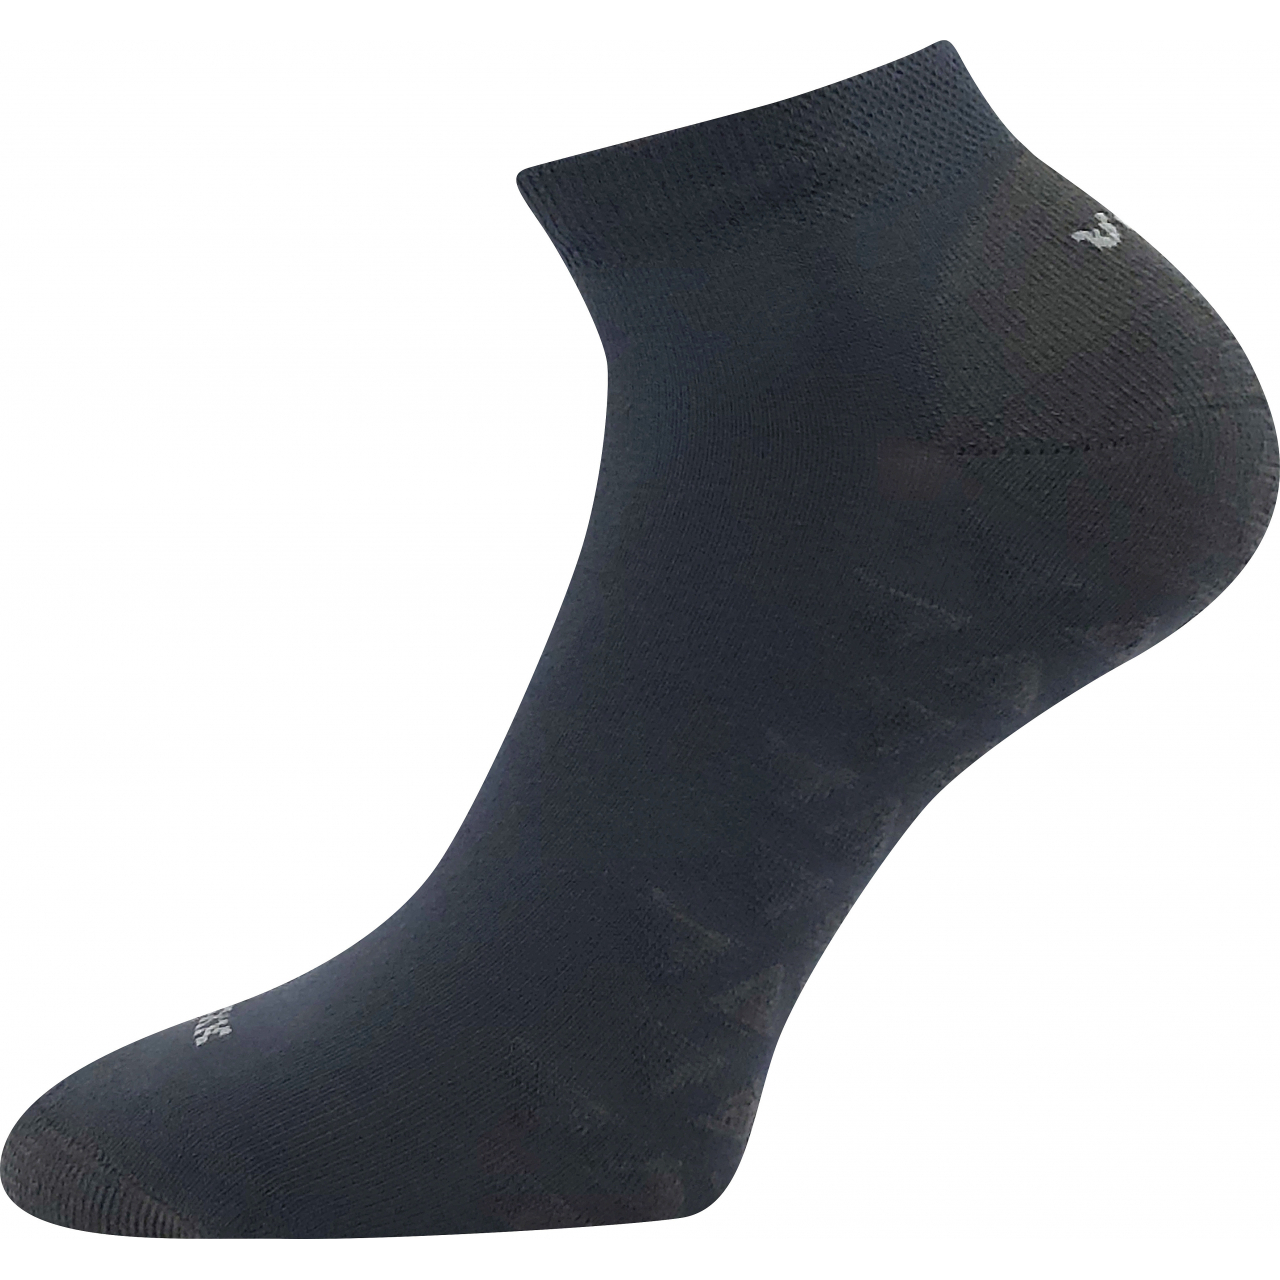 Ponožky unisex sportovní Voxx Beng - tmavě šedé, 39-42